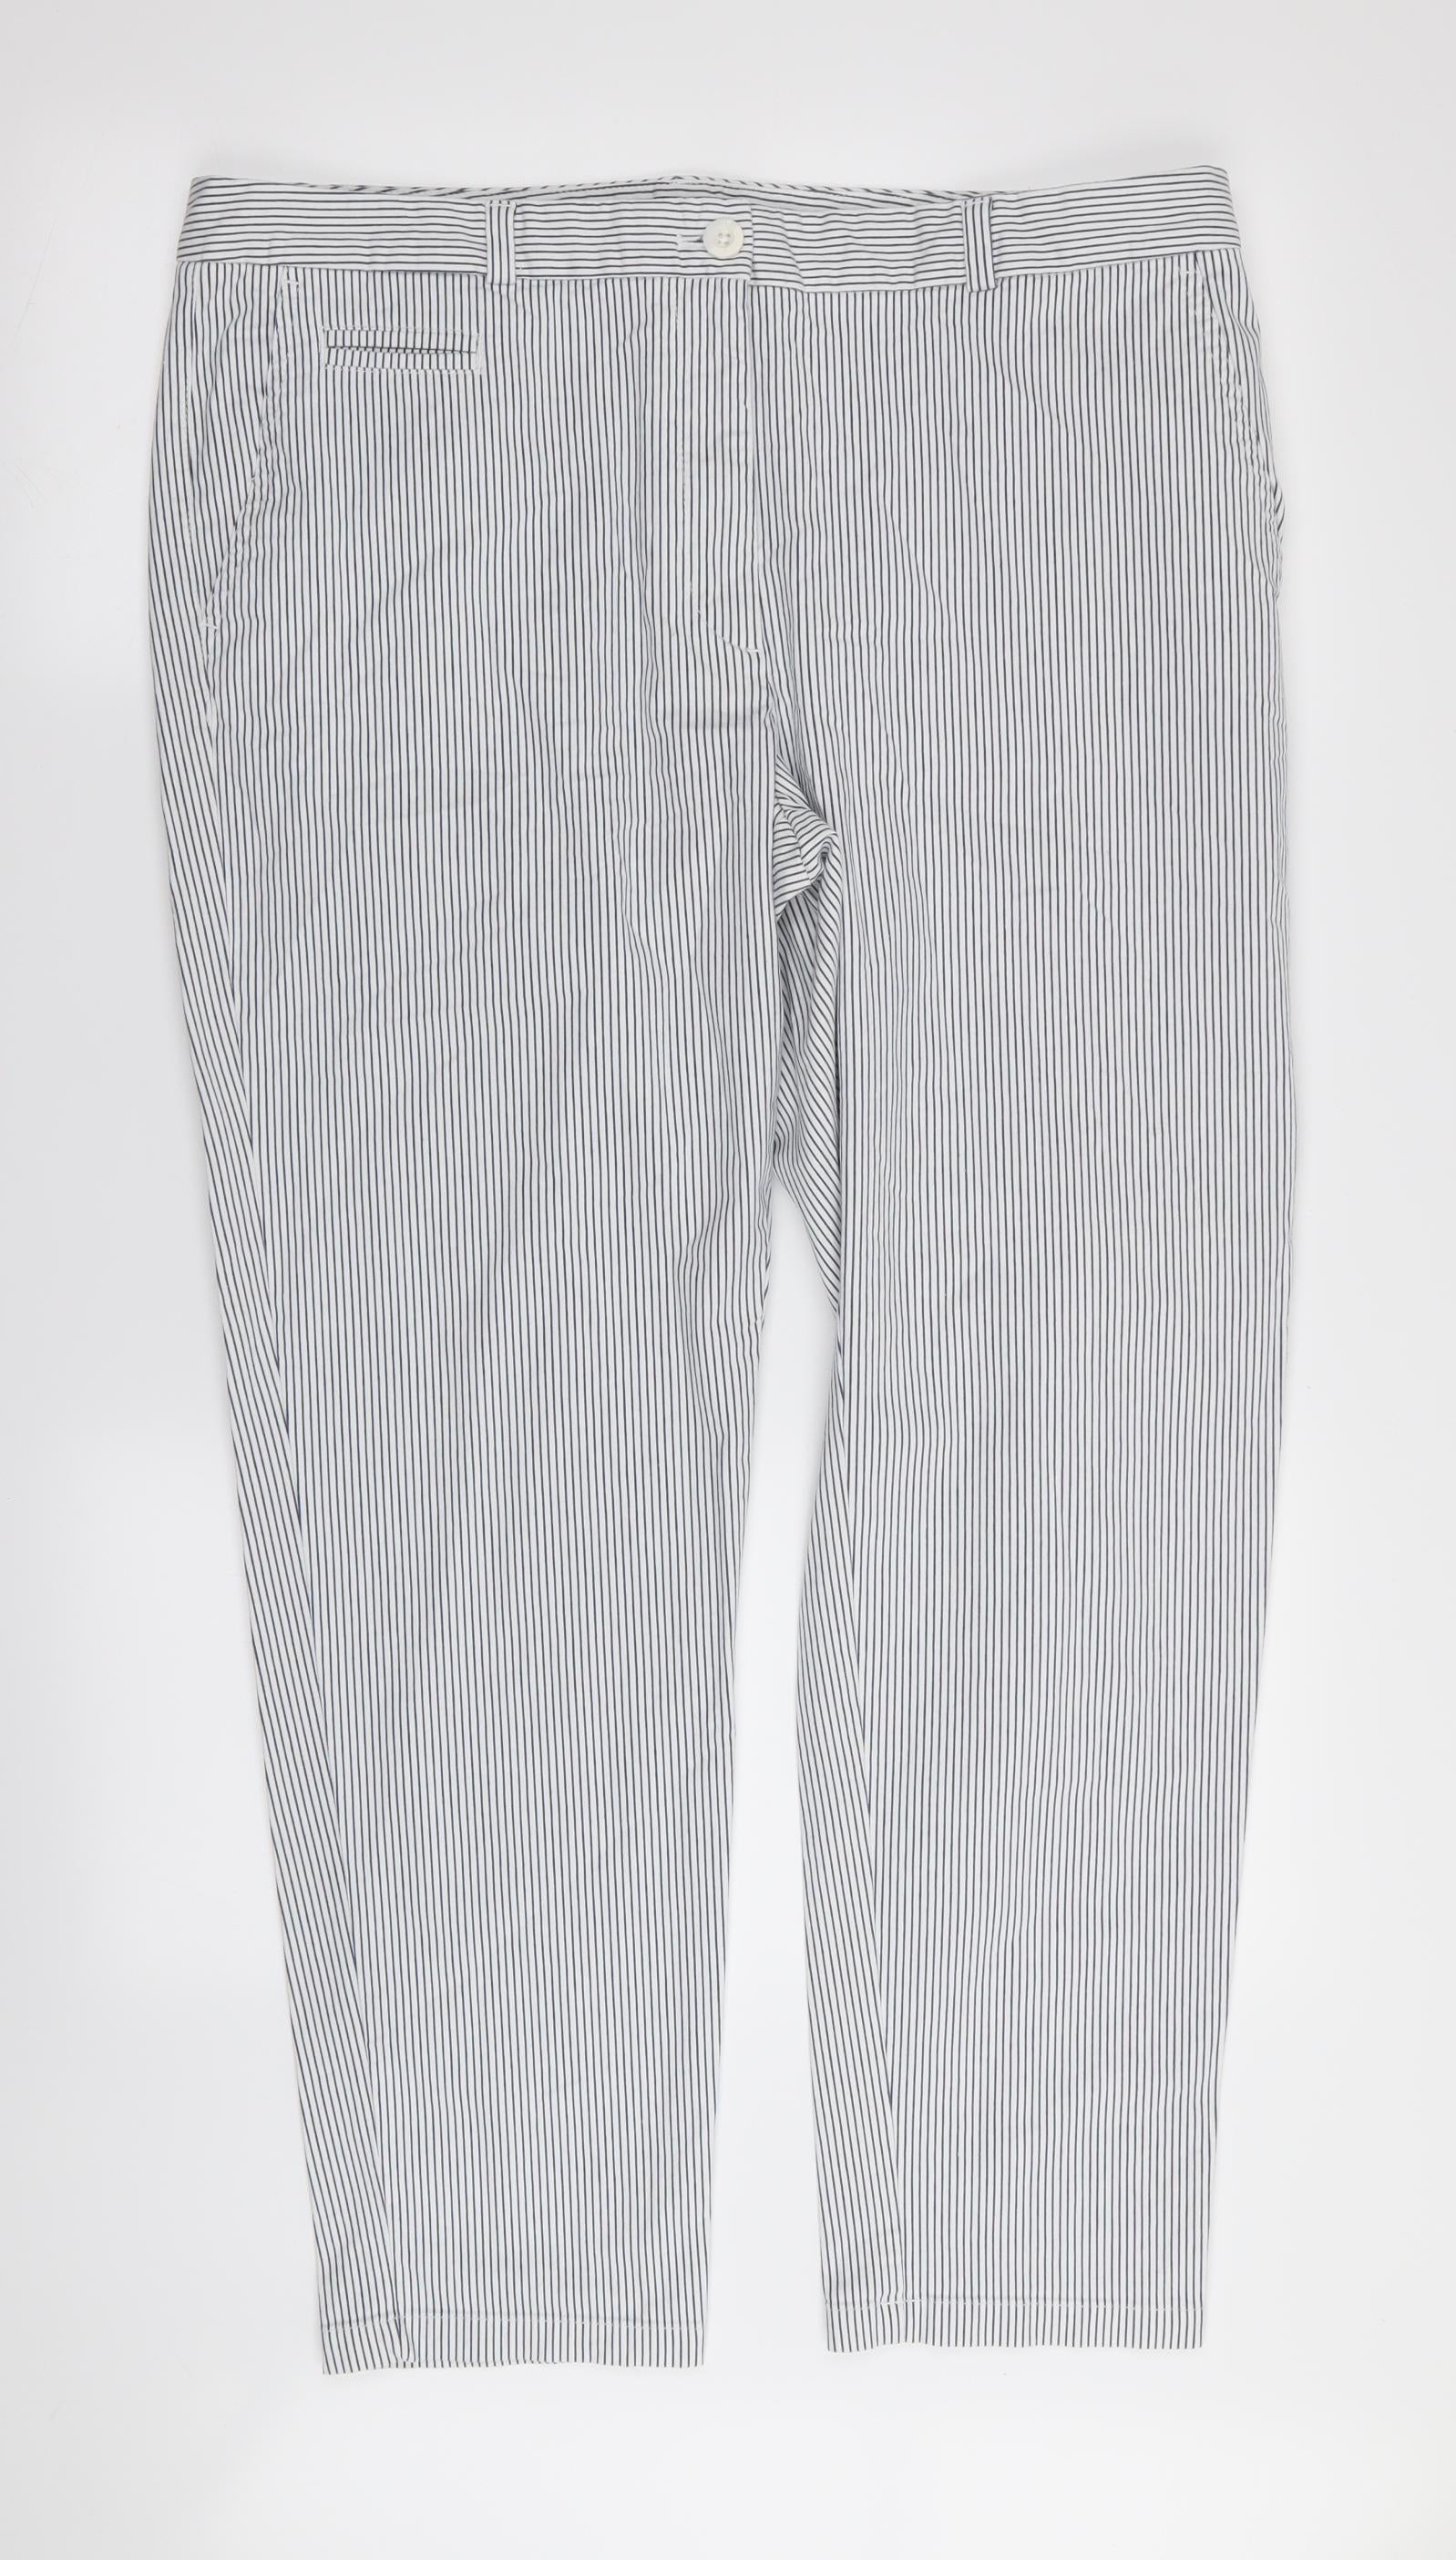 H&M women's gray stripe pants size 16